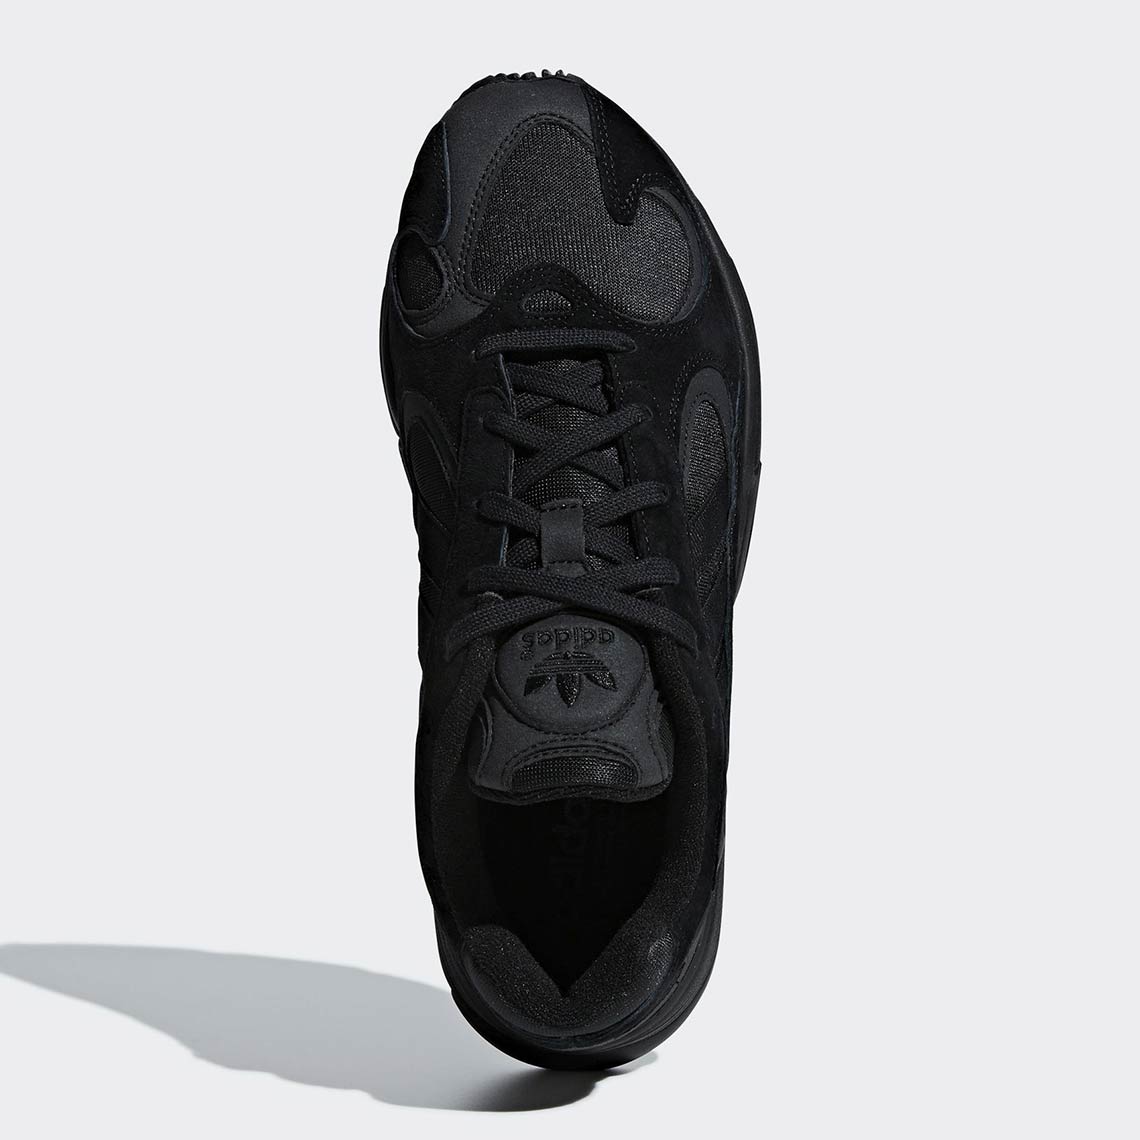 adidas-yung-1-triple-black-g27026-2.jpg